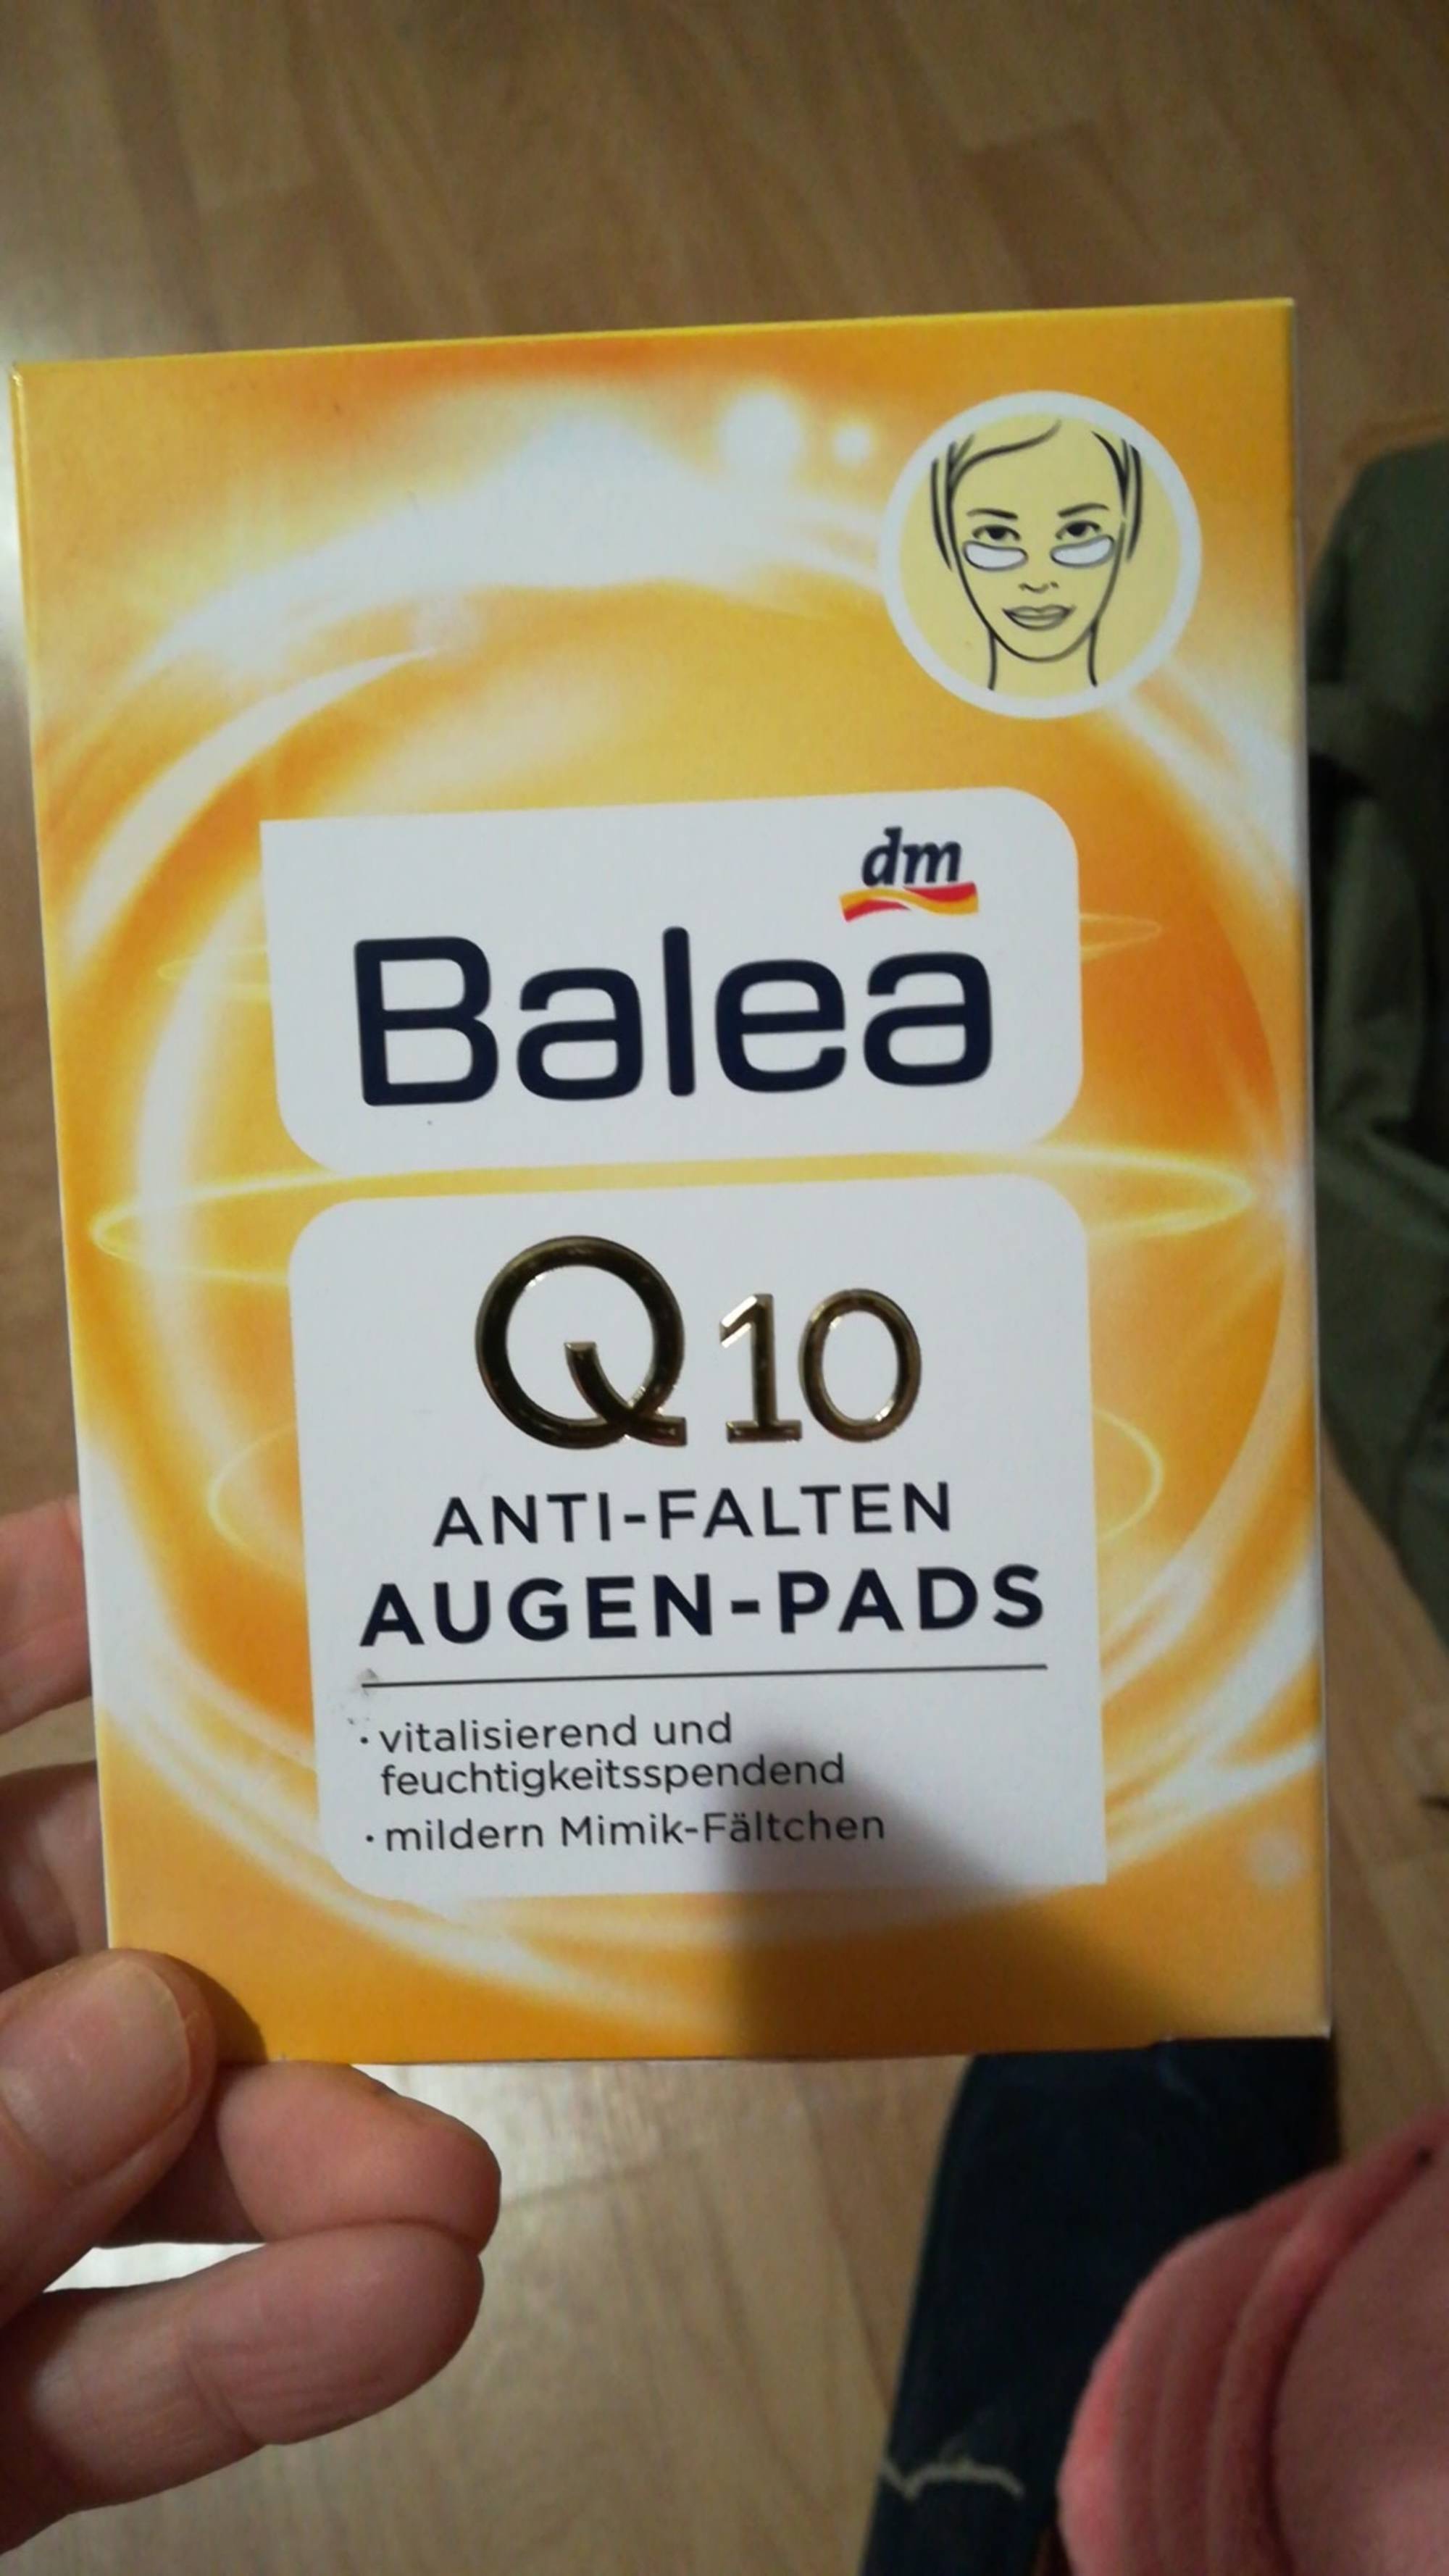 BALEA - dm Q10 anti-falten - Augen-pads